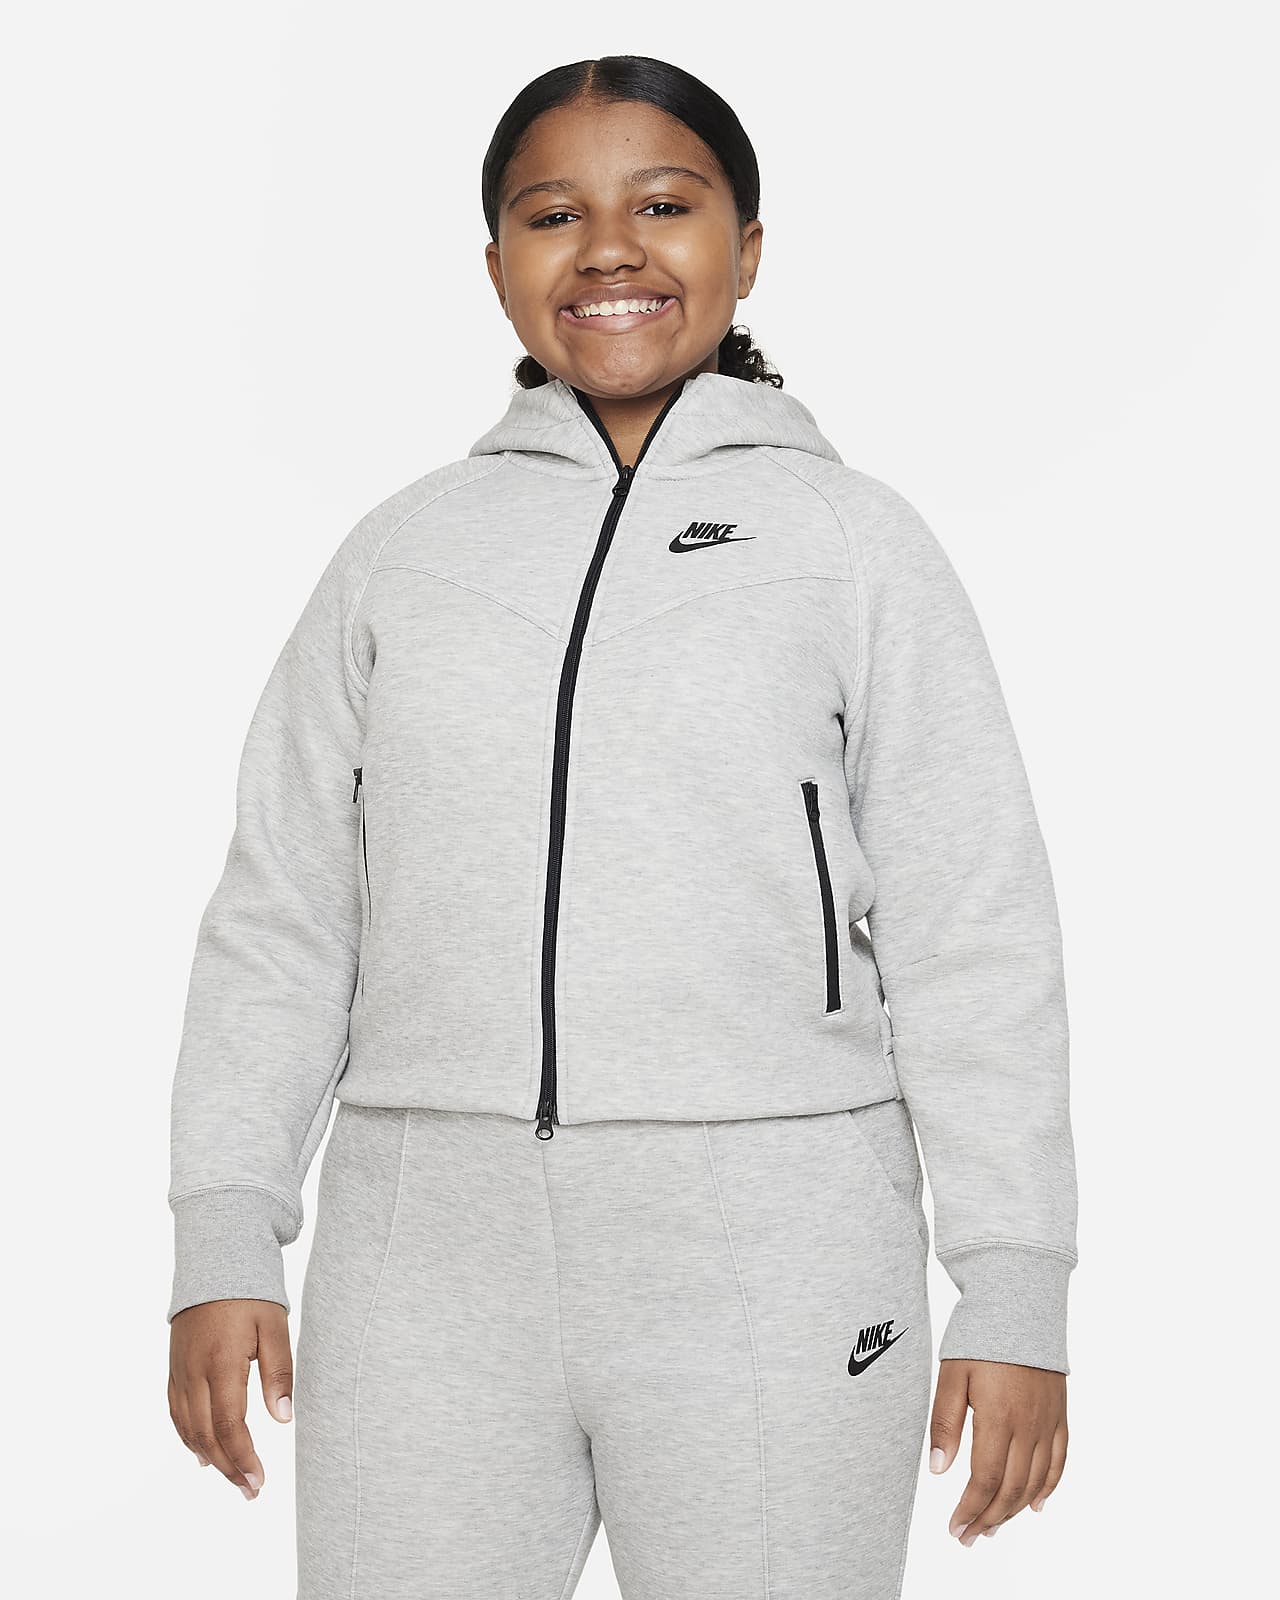 Bluza z kapturem i zamkiem na całej długości dla dużych dzieci (dziewcząt) Nike Sportswear Tech Fleece (szerszy rozmiar)